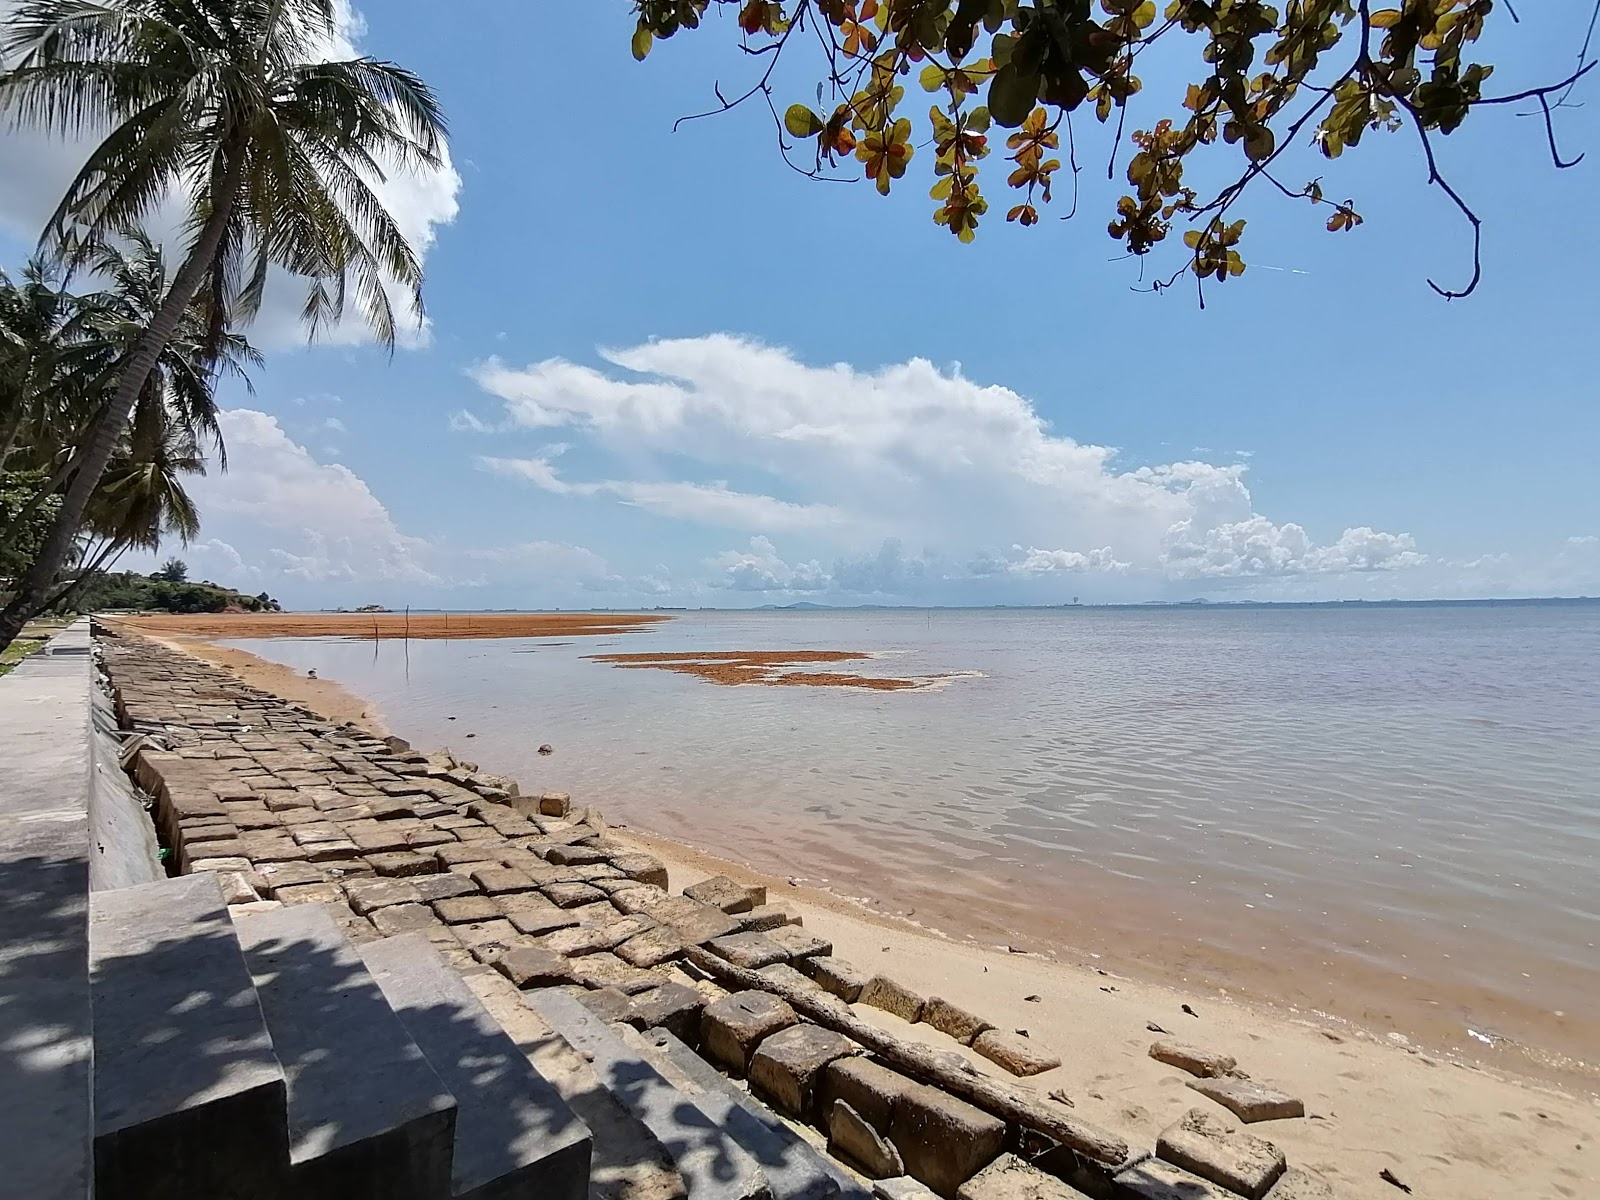 Pantai Tj. Bemban'in fotoğrafı pembe kum yüzey ile